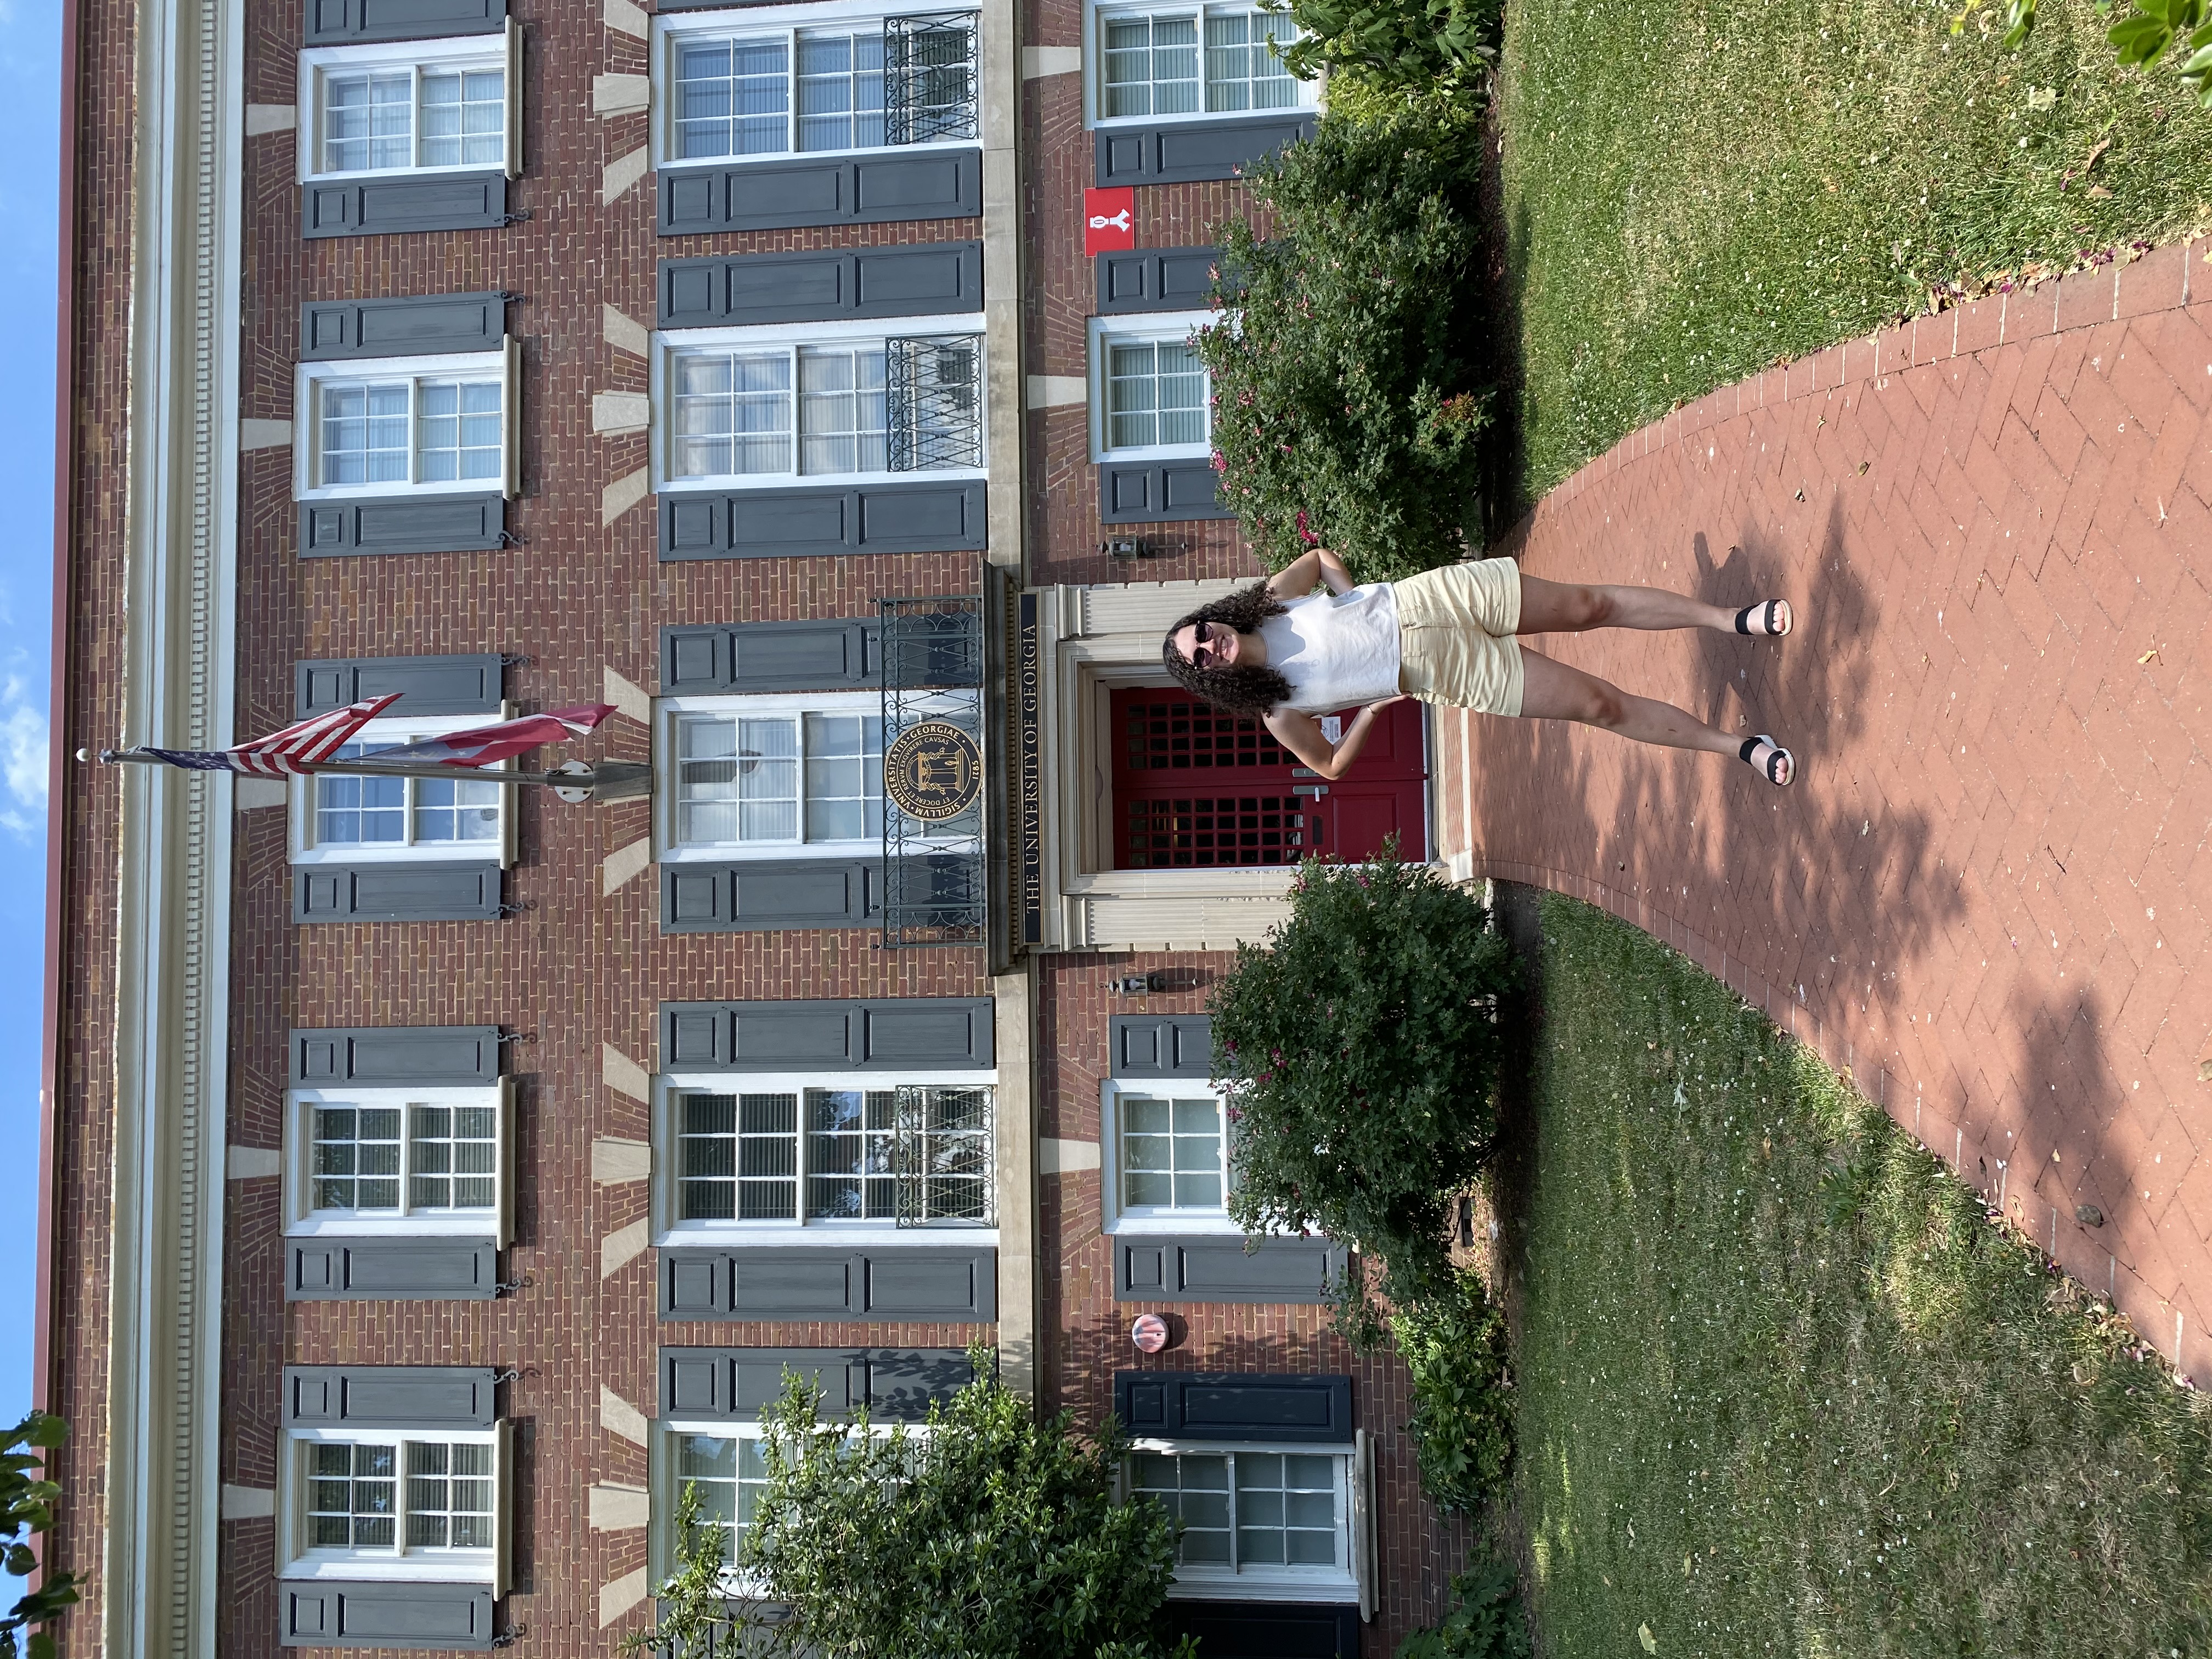 Pysczynski posing outside Delta Hall